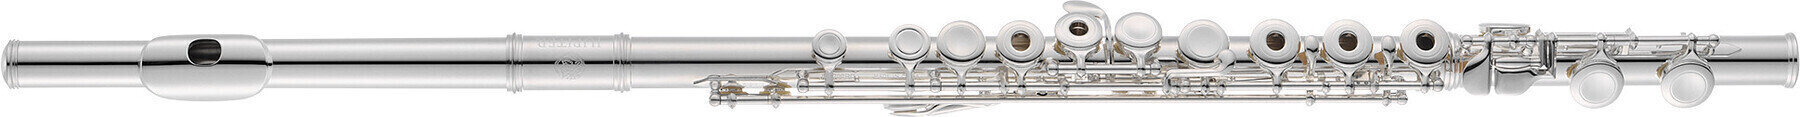 Concert flute Jupiter JFL700RO Concert flute